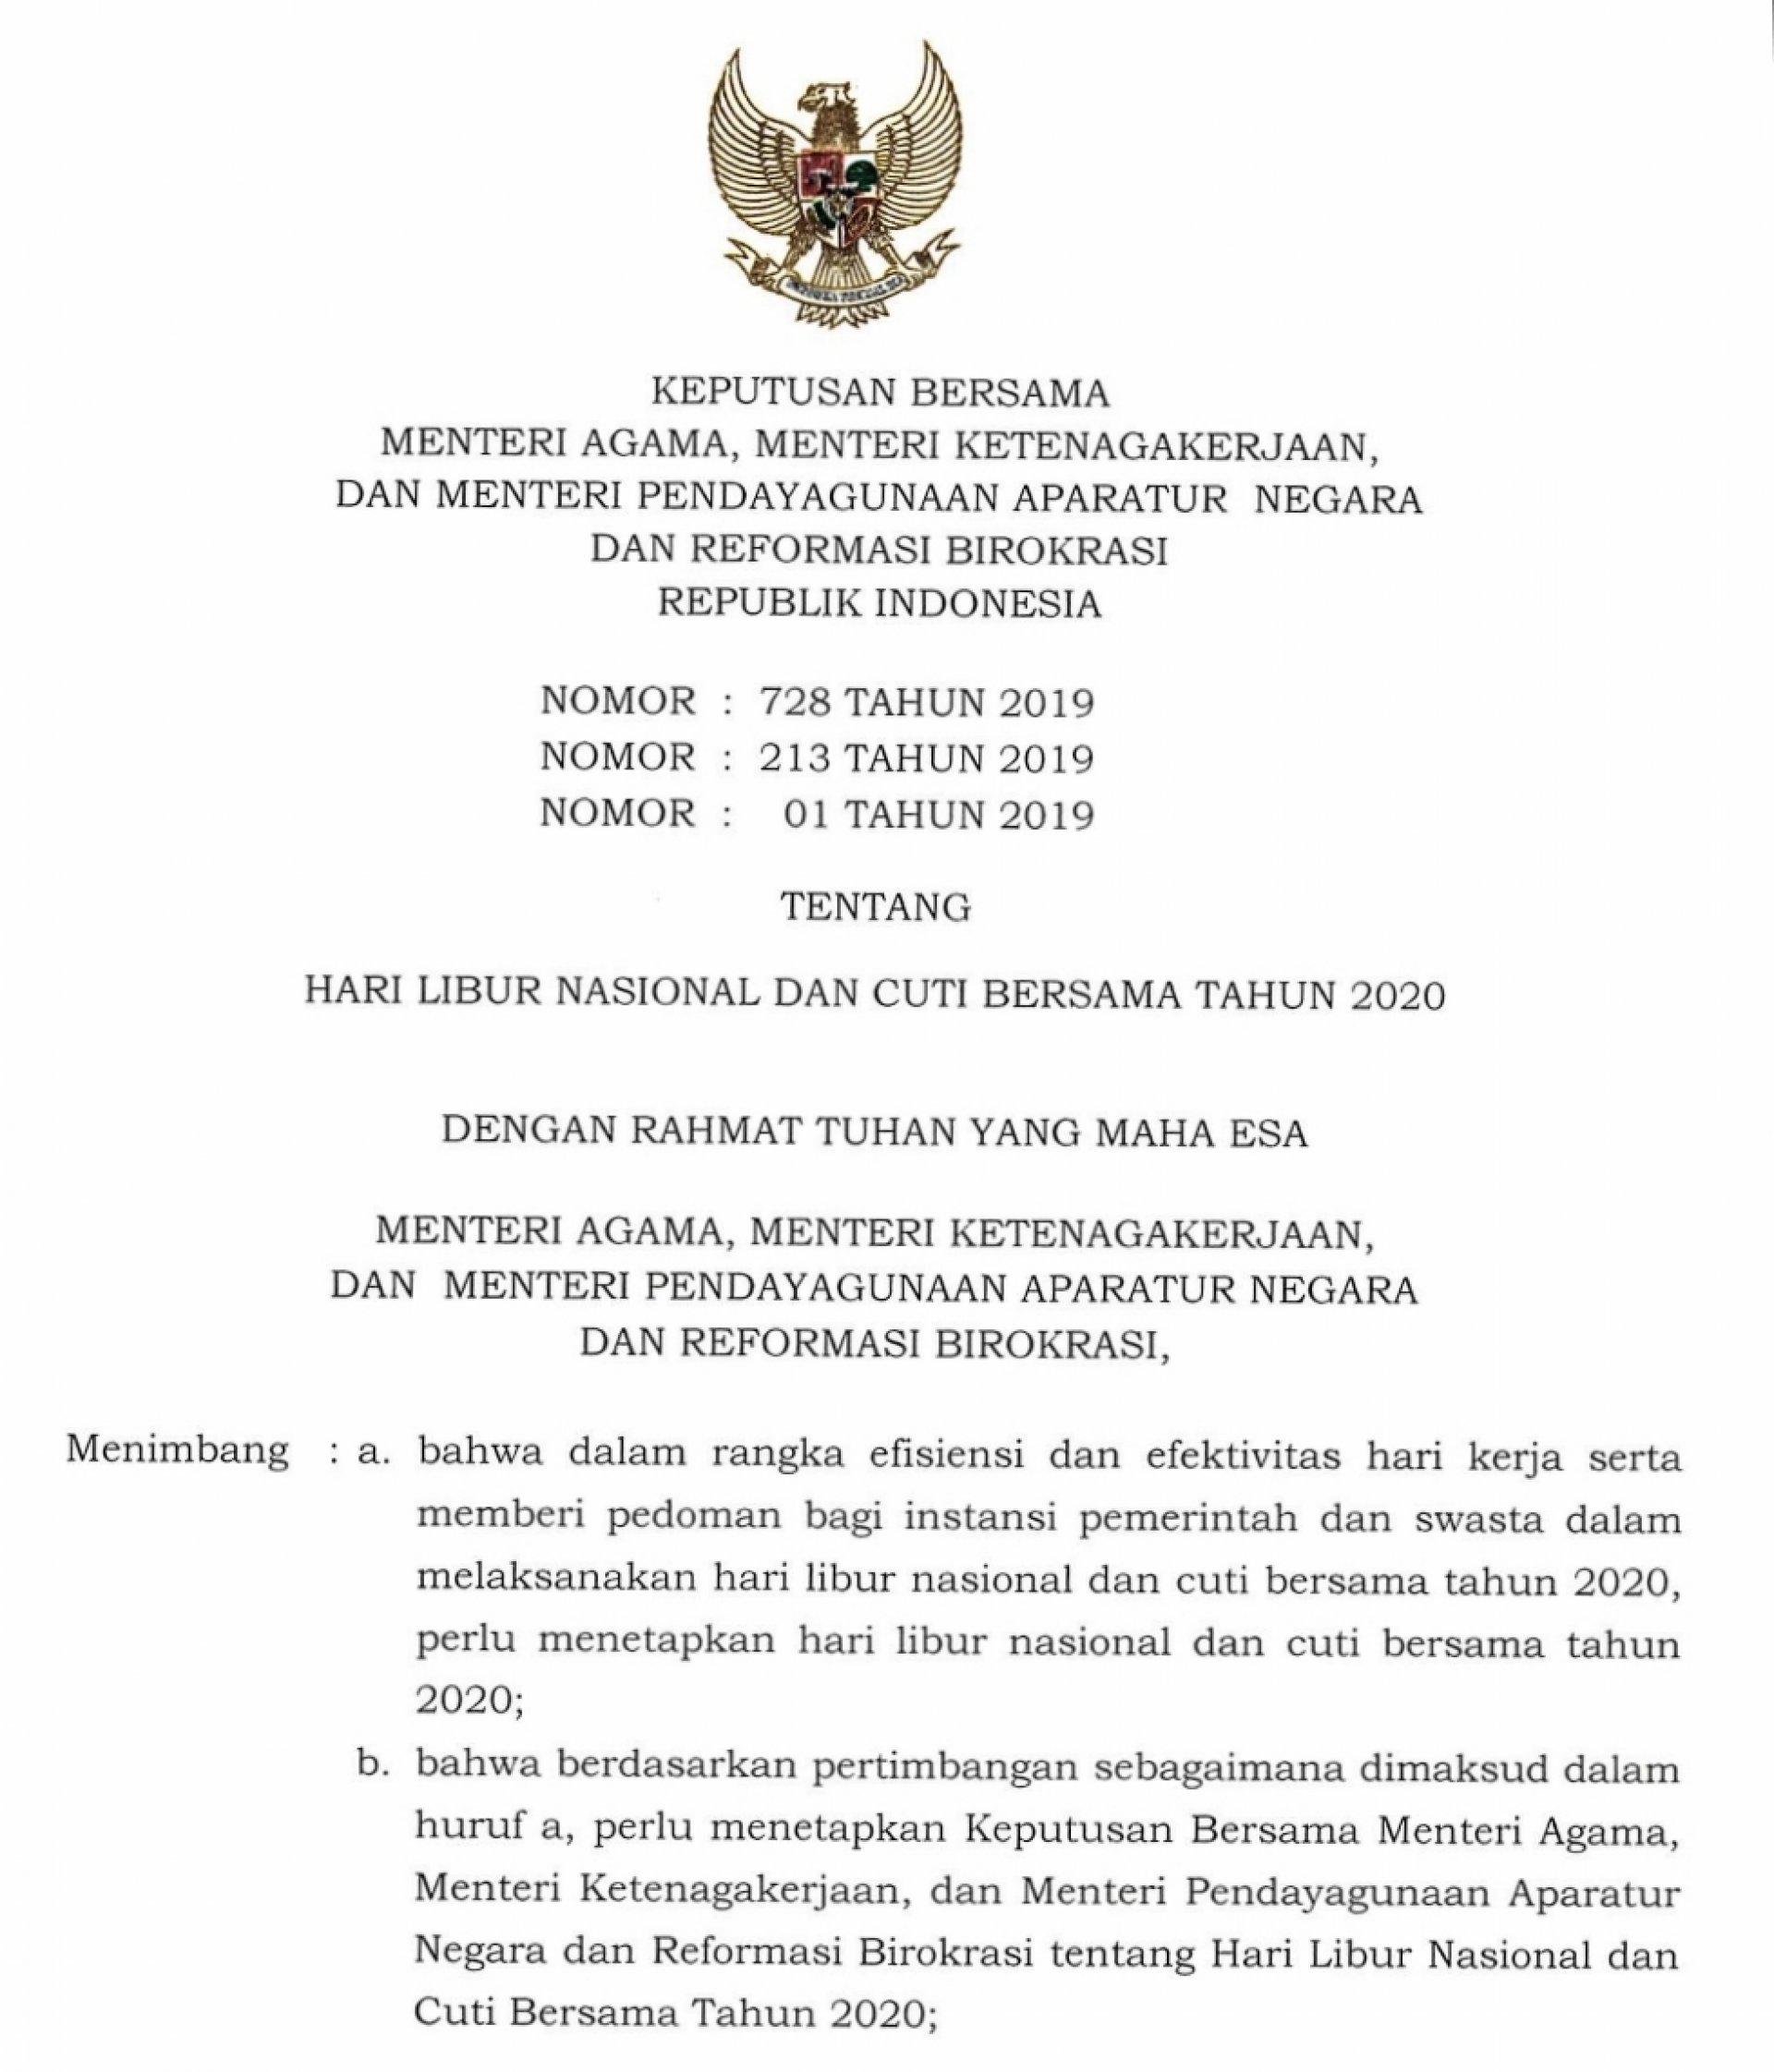 Surat Keputusan Bersama Menteri Agama, Menteri Ketenagakerjaan, dan Menteri PAN-RB Tentang Hari Libur Nasionaldan Cuti Bersama Tahun 2020